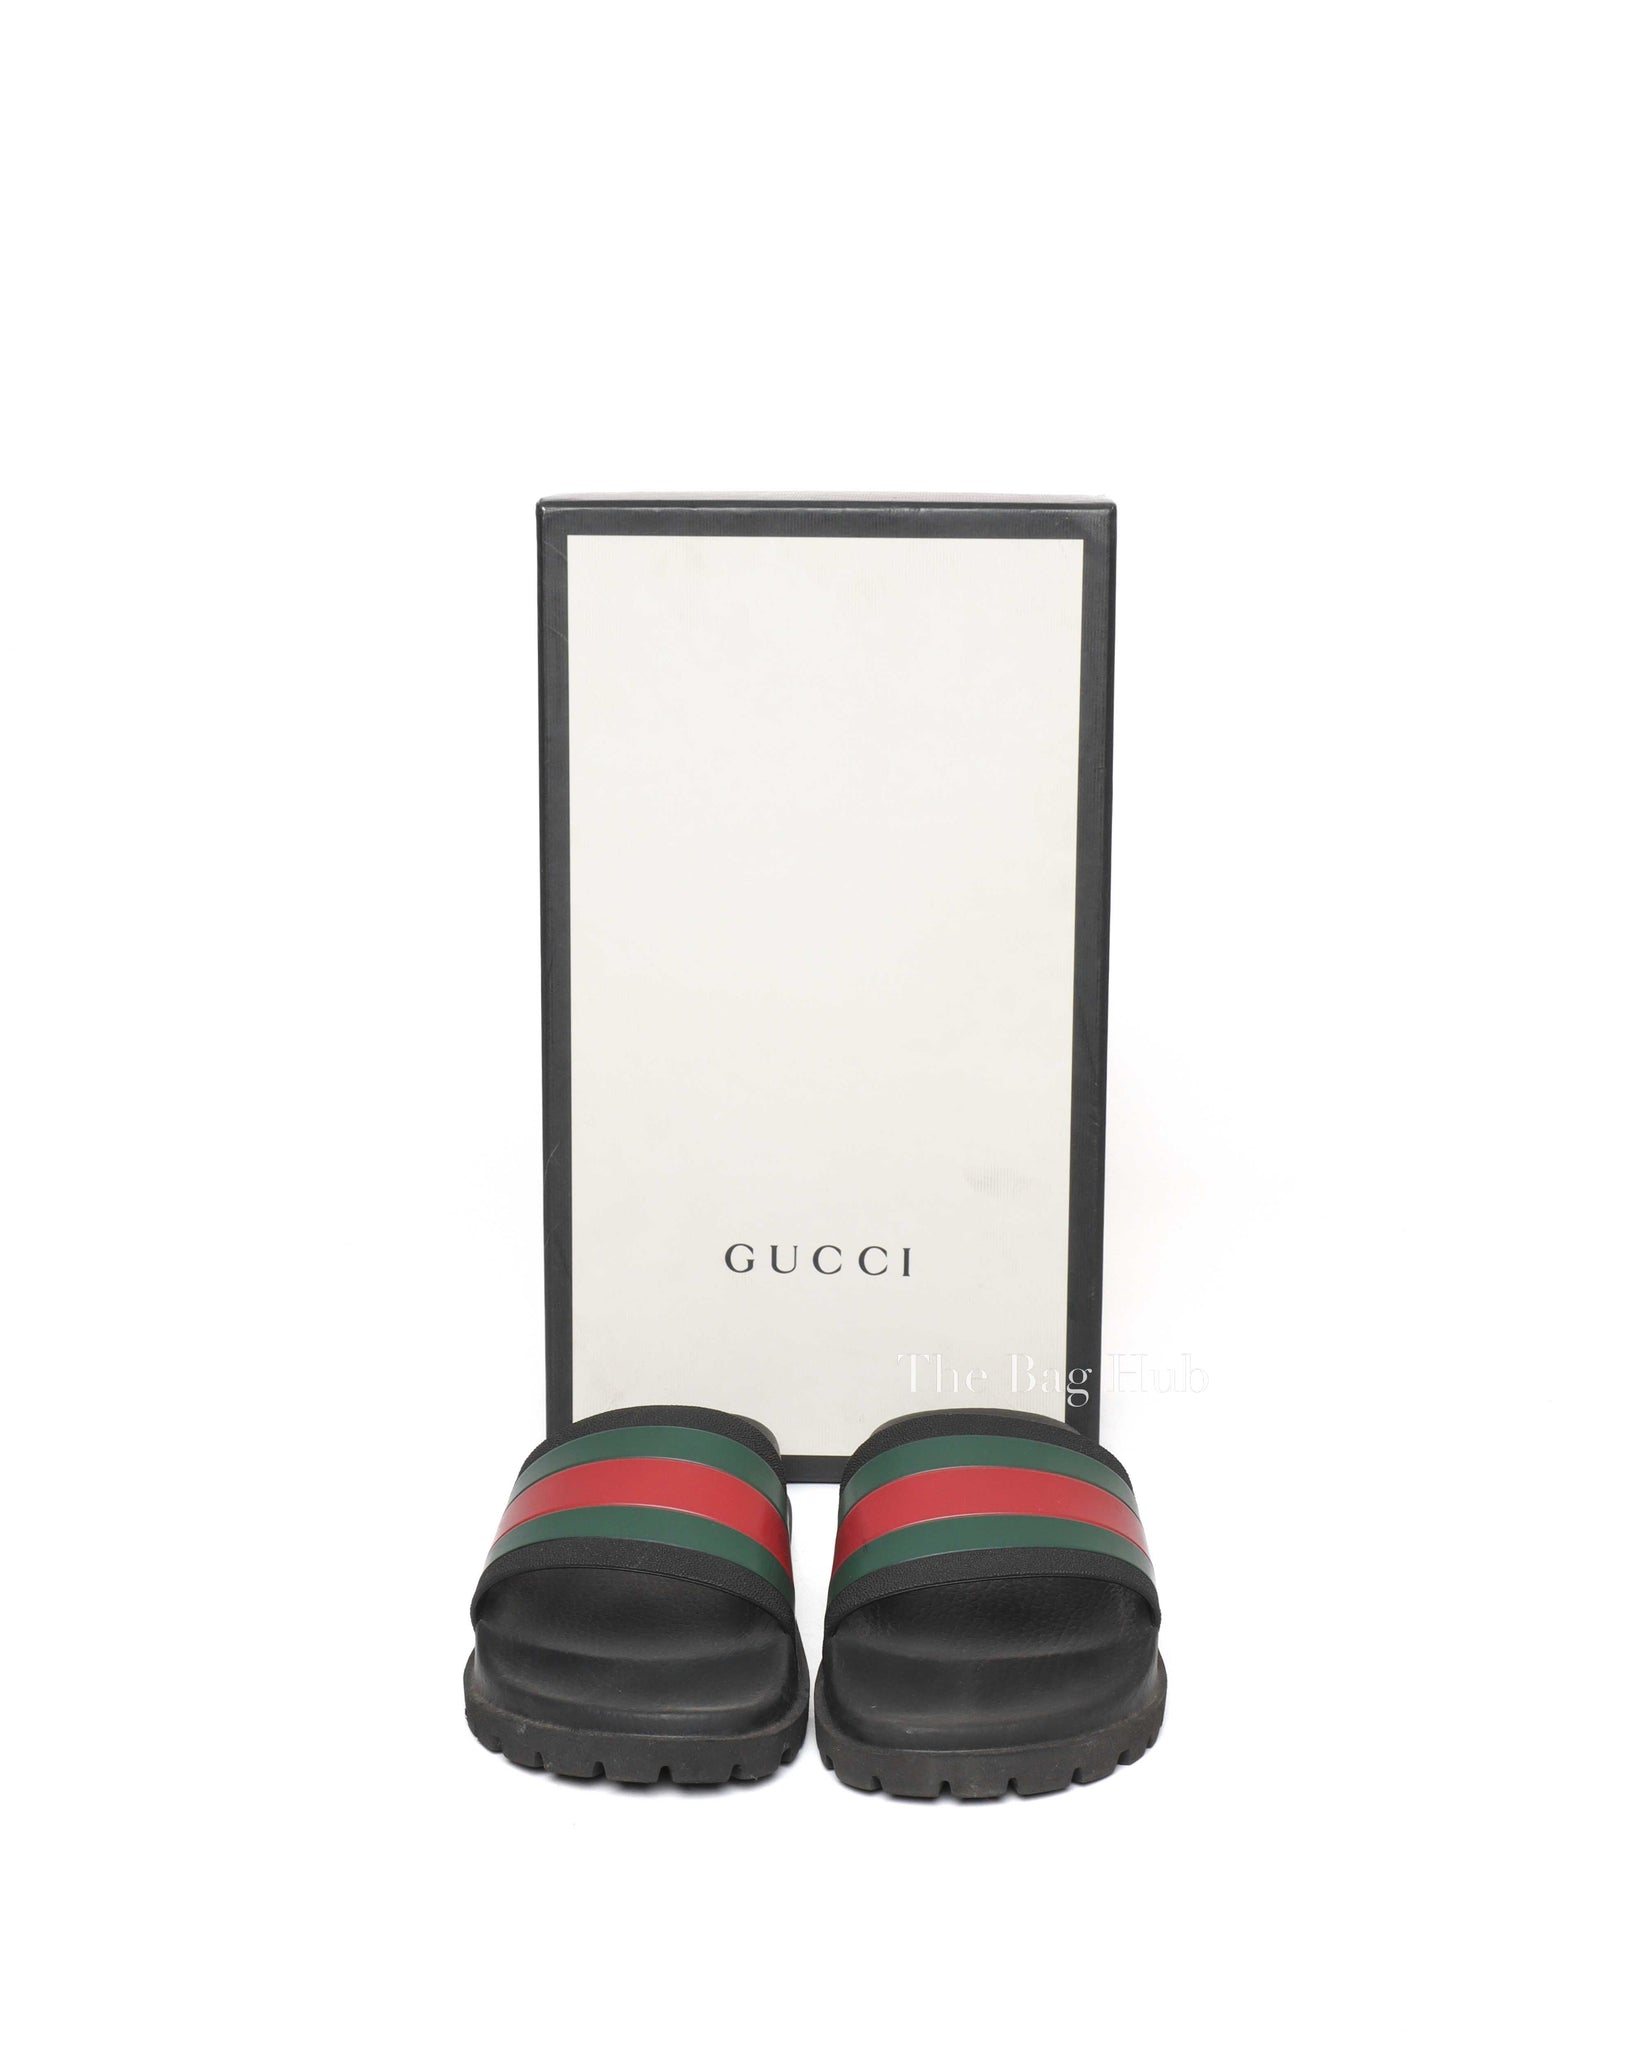 Gucci Black Web Accent Rubber Slide Sandals Size 7-9